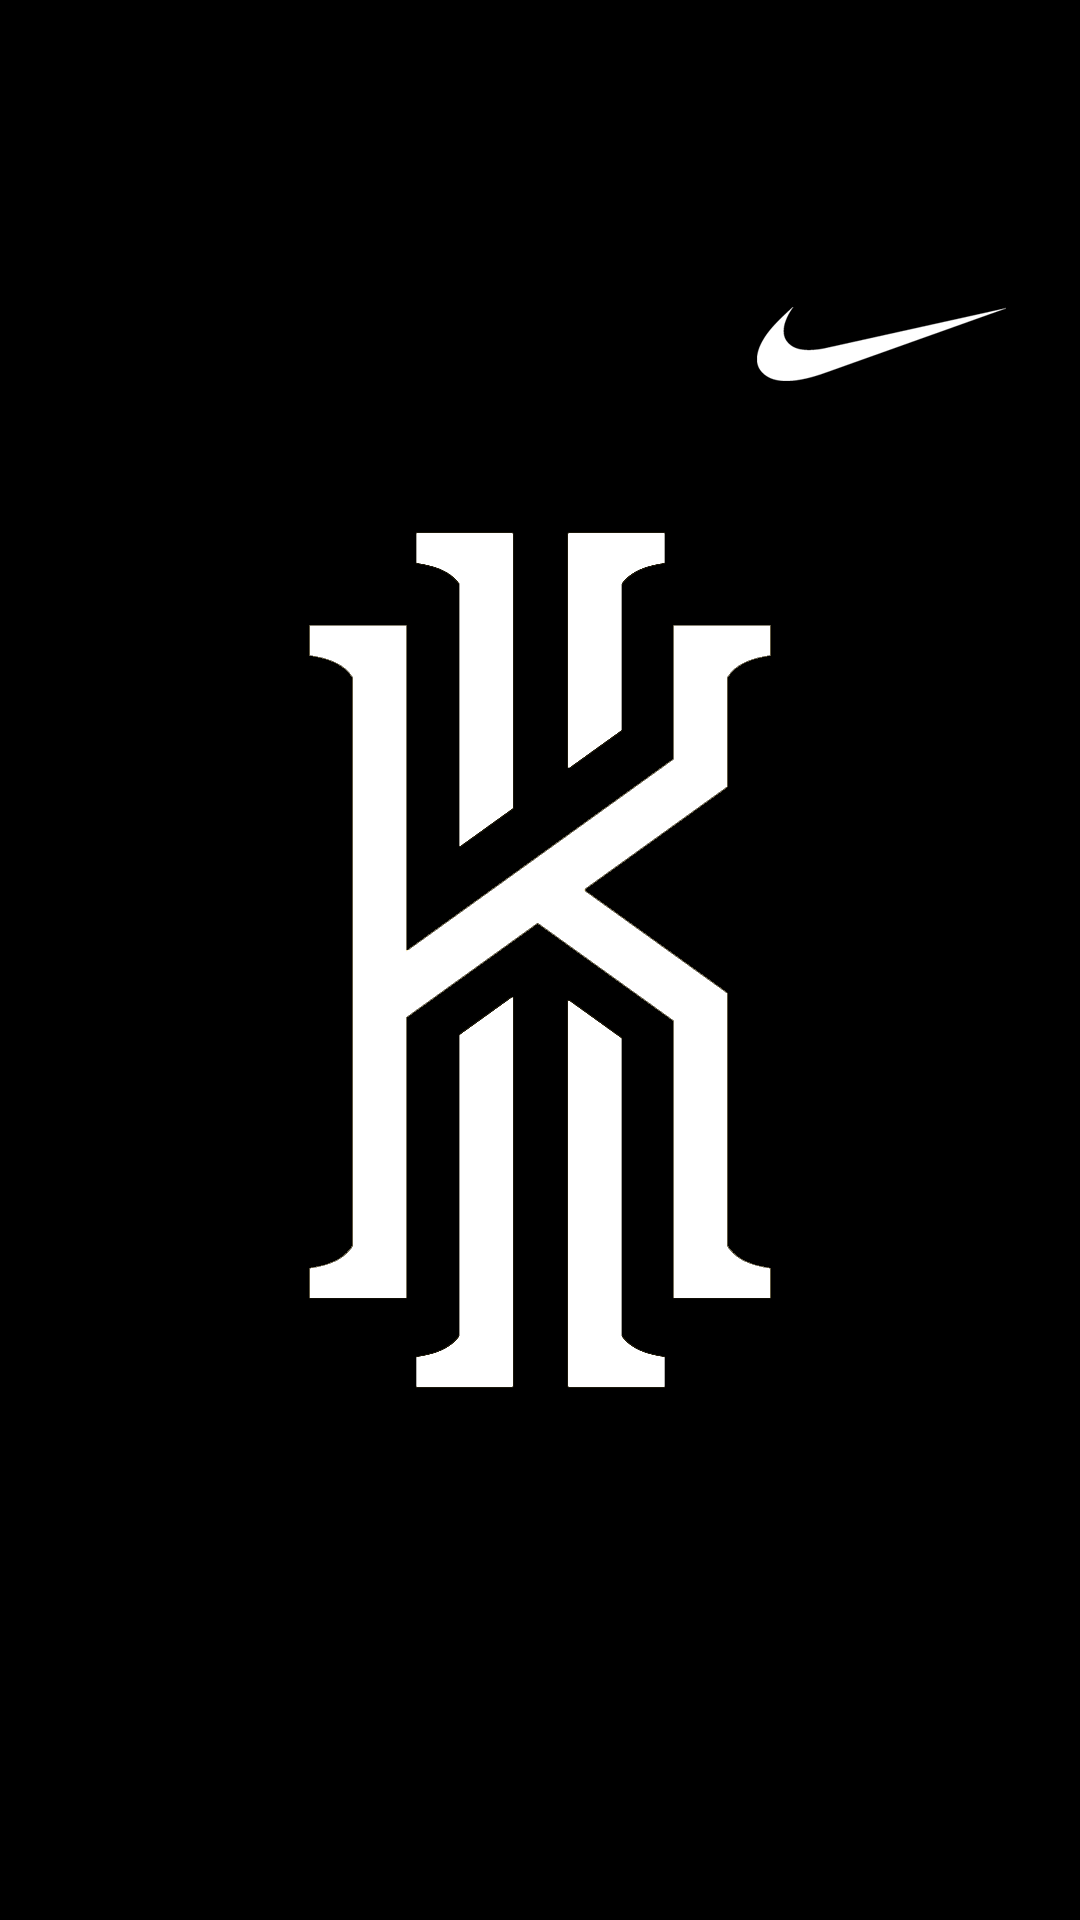 Kyrie Irving Logo - Home Screen. SPORTZ WALLPAPERZ. Kyrie irving, Kyrie irving logo